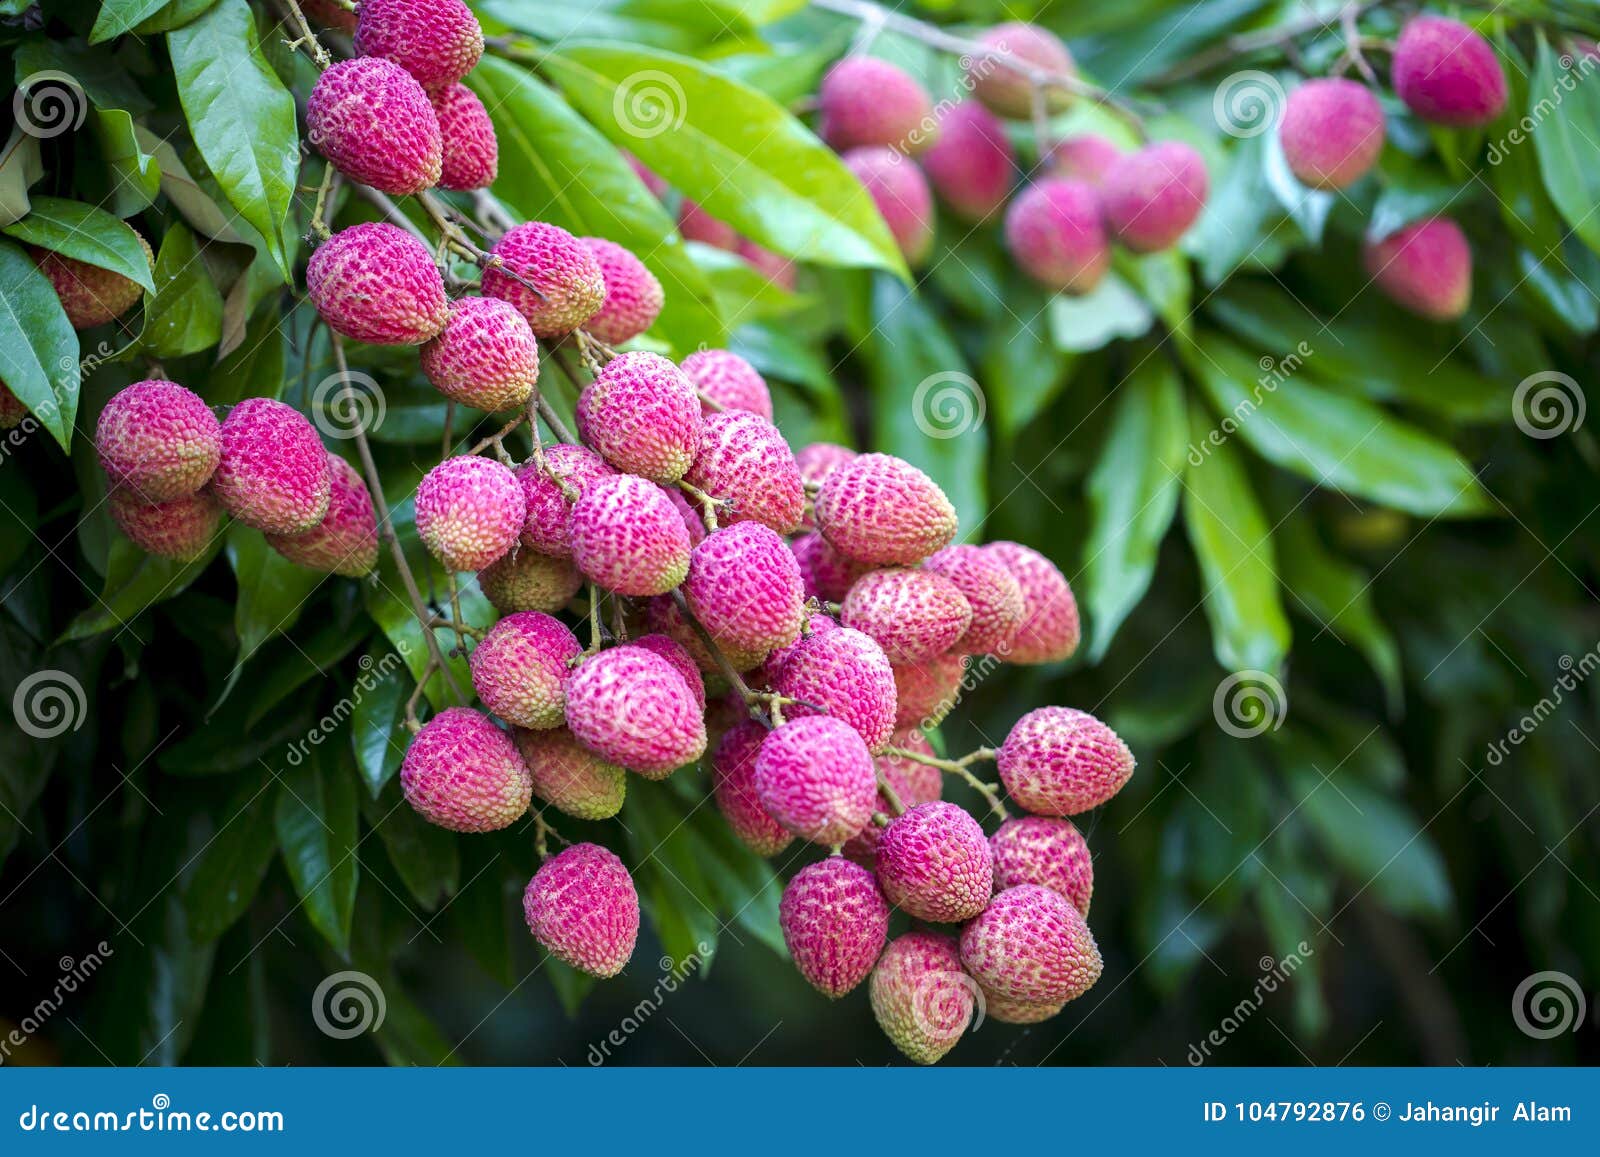 Lychee owoc, w okolicy nazwany Lichu przy ranisonkoil, thakurgoan, Bangladesz. Lychee jest świeżym małym owoc ma białawej brai z fragrant smakiem Owoc zakrywa rewolucjonistki skorupą z grubsza i łatwo usuwa wystawiać warstwę cukierki, półprzezroczystego bielu ciało Ja jest tropikalnym, podzwrotnikowym owocowego drzewa miejscowym i, i teraz kultywuje w wiele częściach świat południowy Chiny, Tajwan i Azja Południowo-Wschodnia Lychee historię hodowlany iść plecy tak daleko jak 2000 BC według rejestrów w Chiny Lychee kultywuje w Chiny, Tajlandia, Wietnam, Malezja, Japonia, Bangladesz, Pakistan i północnym India, Lychee jest sezonowymi i bardzo popularnymi owoc w Bangladesz Itâ€™s zakłada podczas lata czerwiec w Bangladesz Najlepszy ilość lychee produkuje w Dinajpur i Rajshahi okręgu Lychees wymagają sezonowe temperaturowe różnicy dla najlepszy kwiecenia i fruiting, Ciepli, wilgotni lata, są najlepszy dla kwitnąć i owocowy rozwoju, i pewna kwota zimy chłodzić jest konieczna dla kwiatu pączka rozwoju Chłodno zimy z niskim opady deszczu są idealne dla lychees Owoc dorośleć w 80â€ "112 dnia w zależności od klimatu, lokaci i cultivar, Owoc dosięgają up to 5 cm 2 (0) w długim i 4 cm 1 6 w szerokim, zmieniający w kształcie od round, ovoid, sercowaty Cienka, twarda niejadalna skóra niewyrobiona, jest zielona gdy, dojrzewający czerwień lub rewolucjonistka